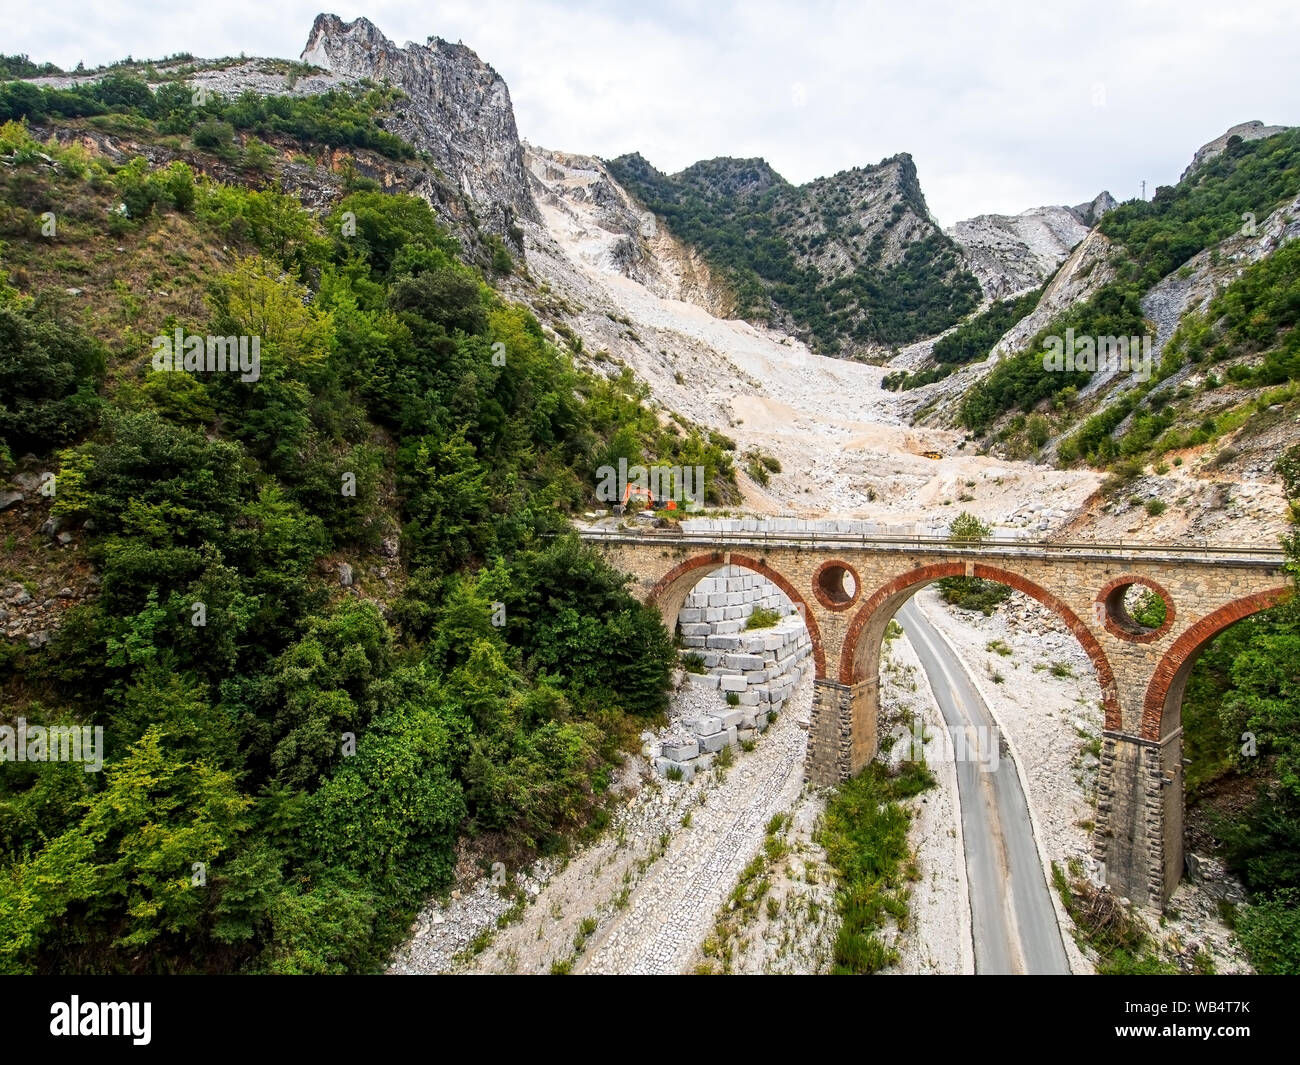 Ponti di Vara ponti nelle cave di marmo di Carrara, Toscana, Italia. Nelle Alpi Apuane. Delle cave di pietra di marmo è un settore industriale importante. Foto Stock